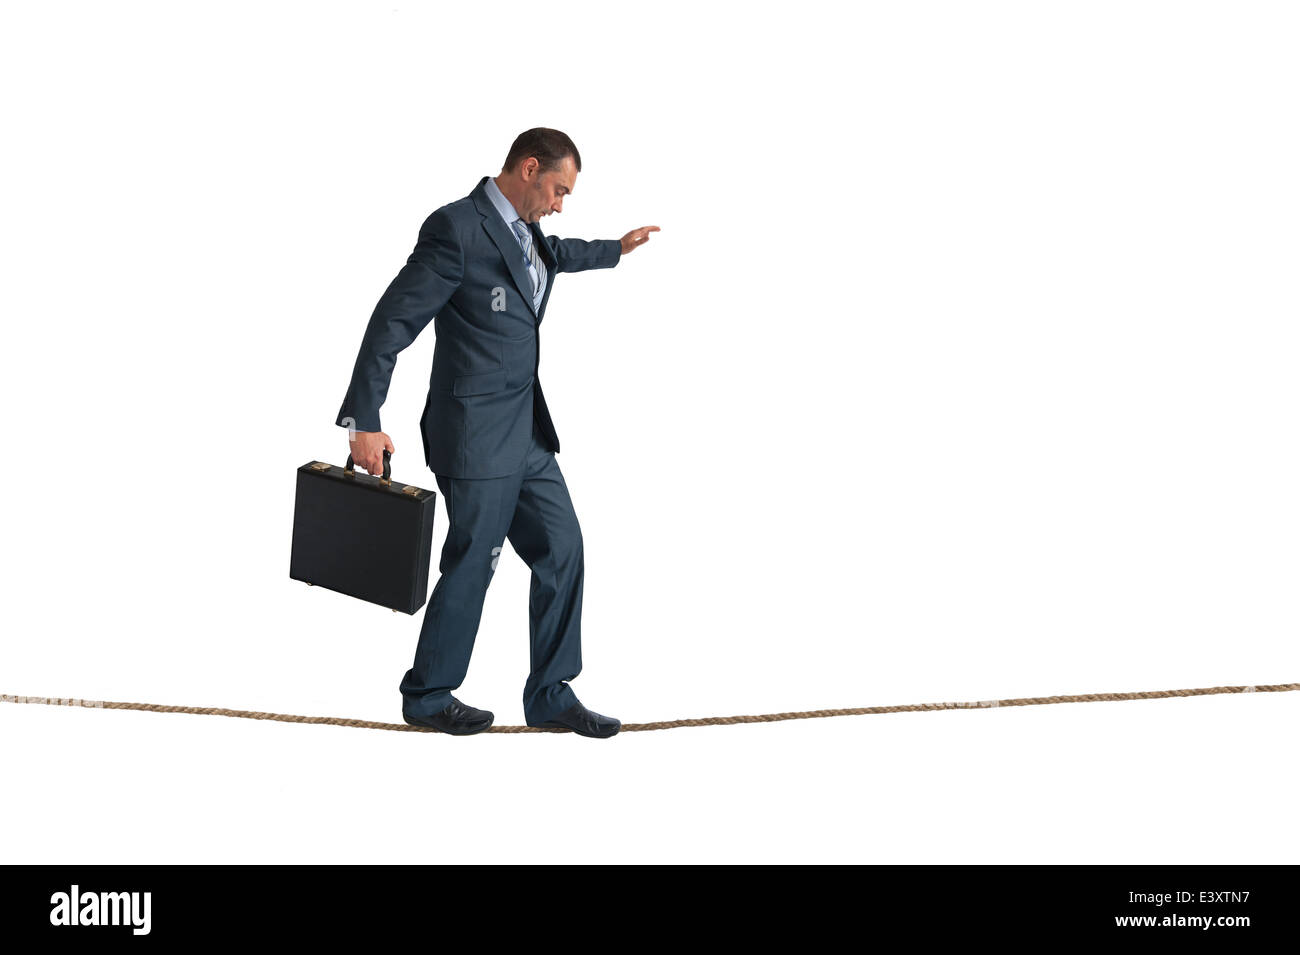 Businessman en équilibre sur une corde raide, isolated on white Banque D'Images